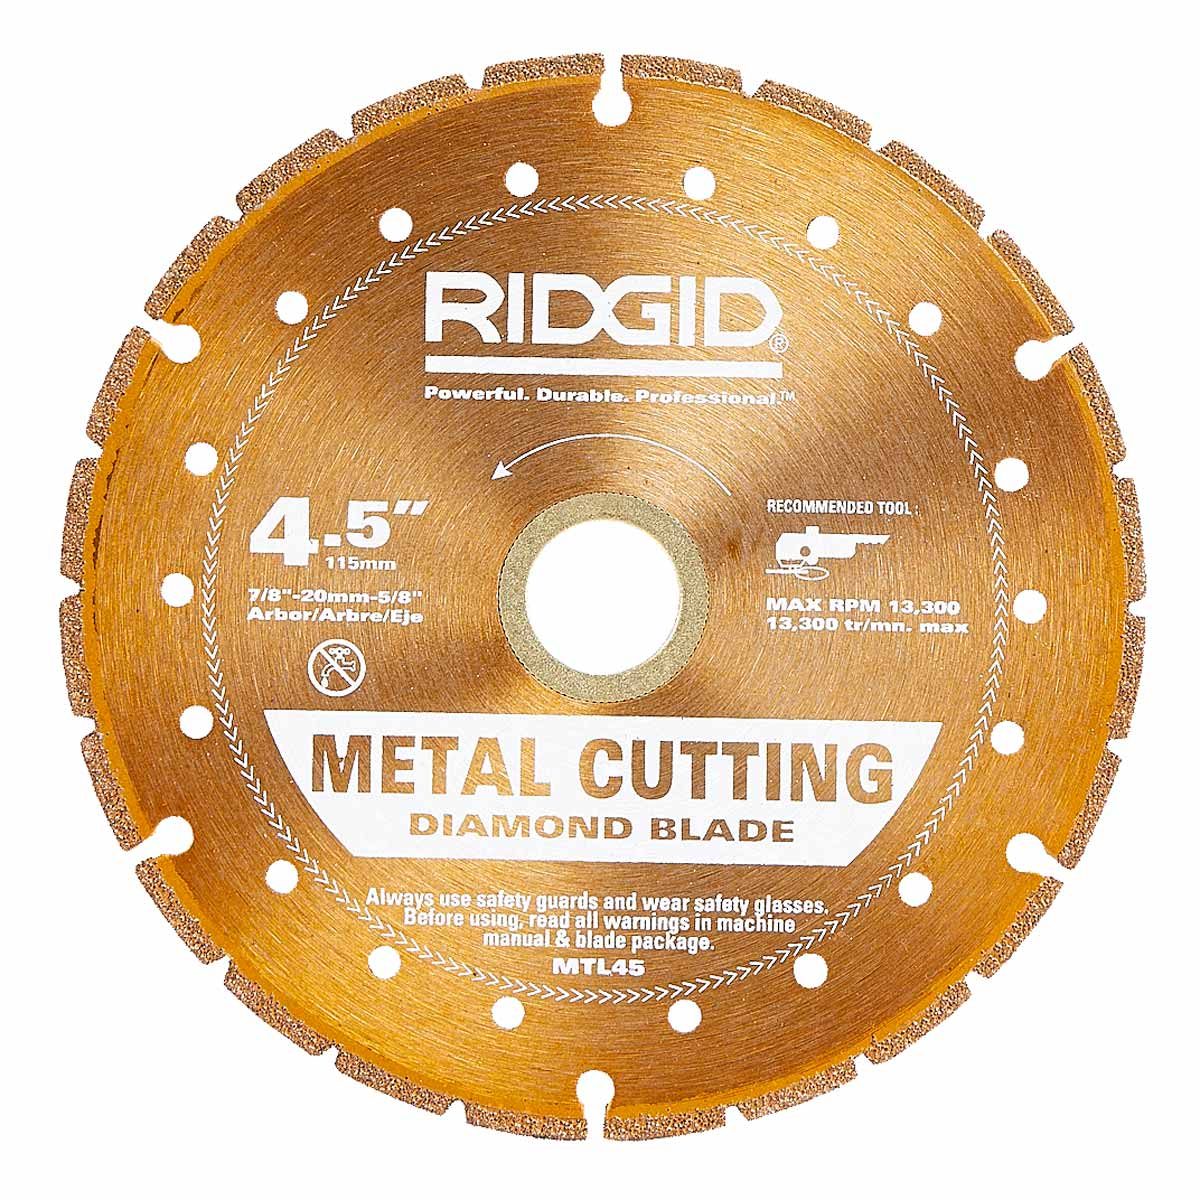 can a saw cut through metal